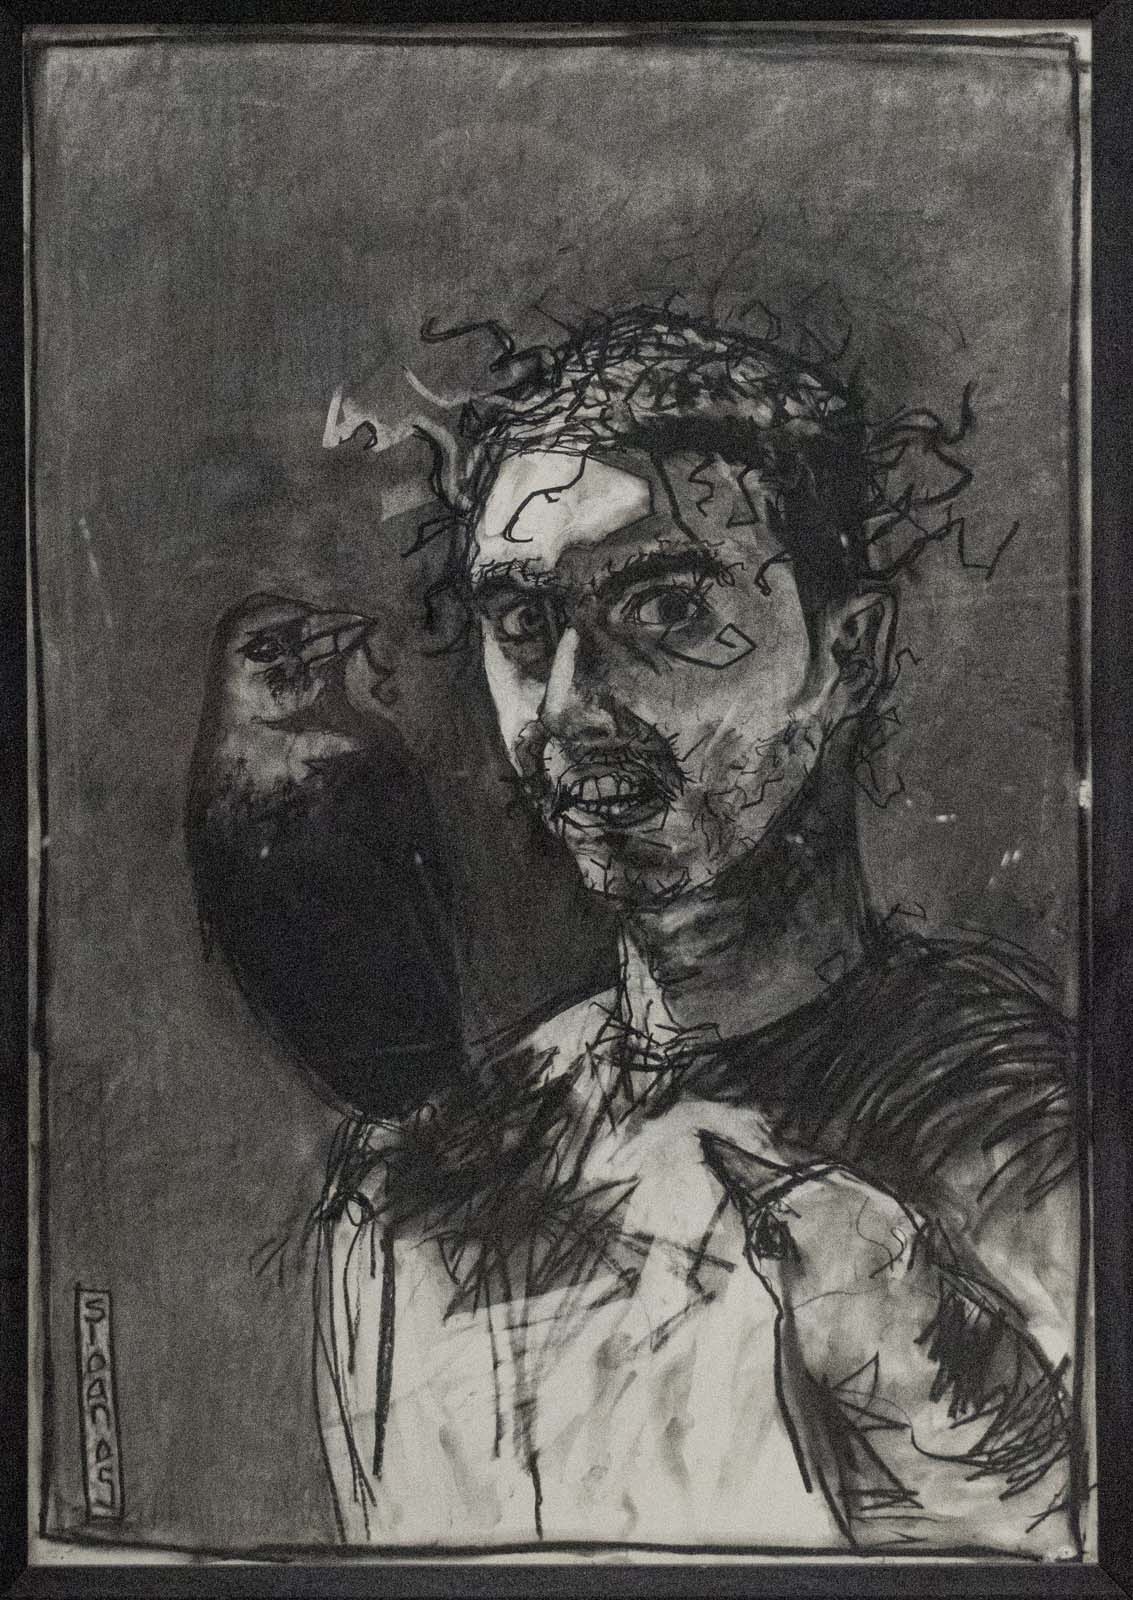 Self Portrait with Crow